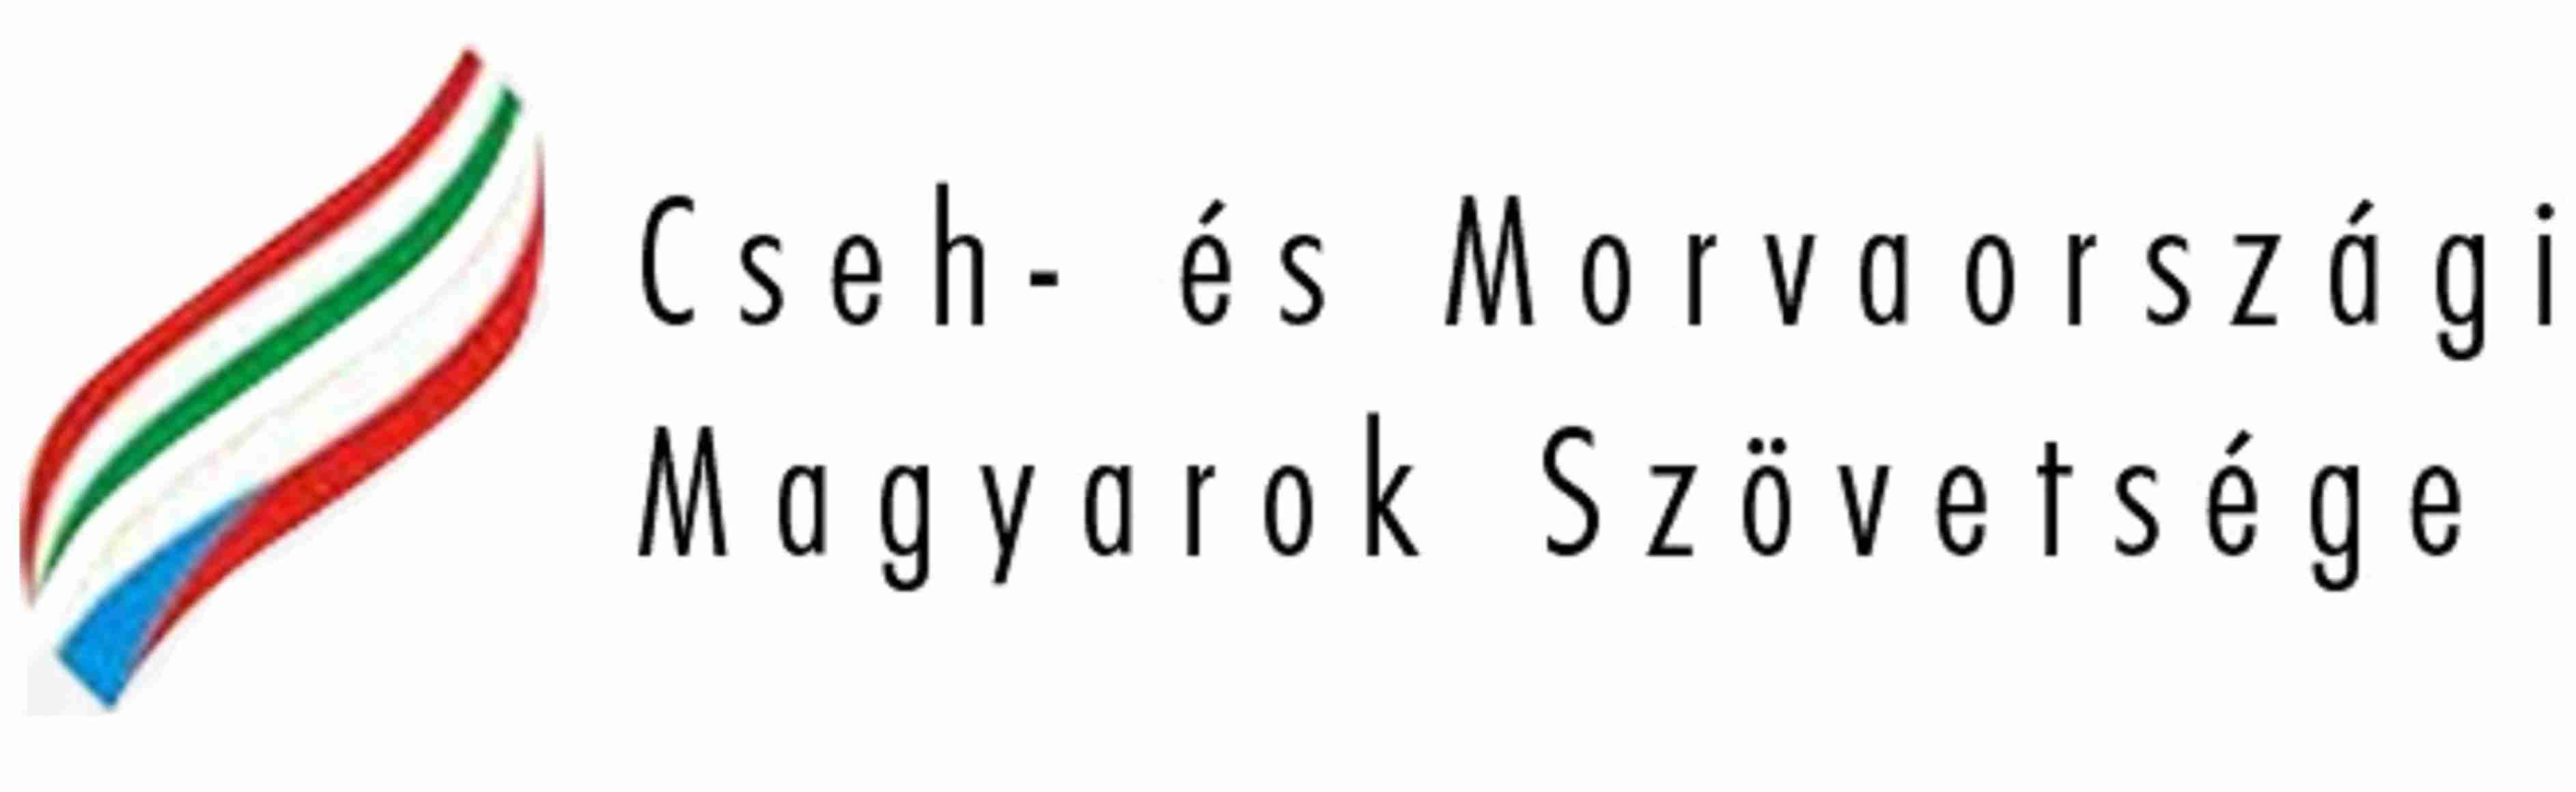 Cseh- és Morvaországi Magyarok Szövetsége